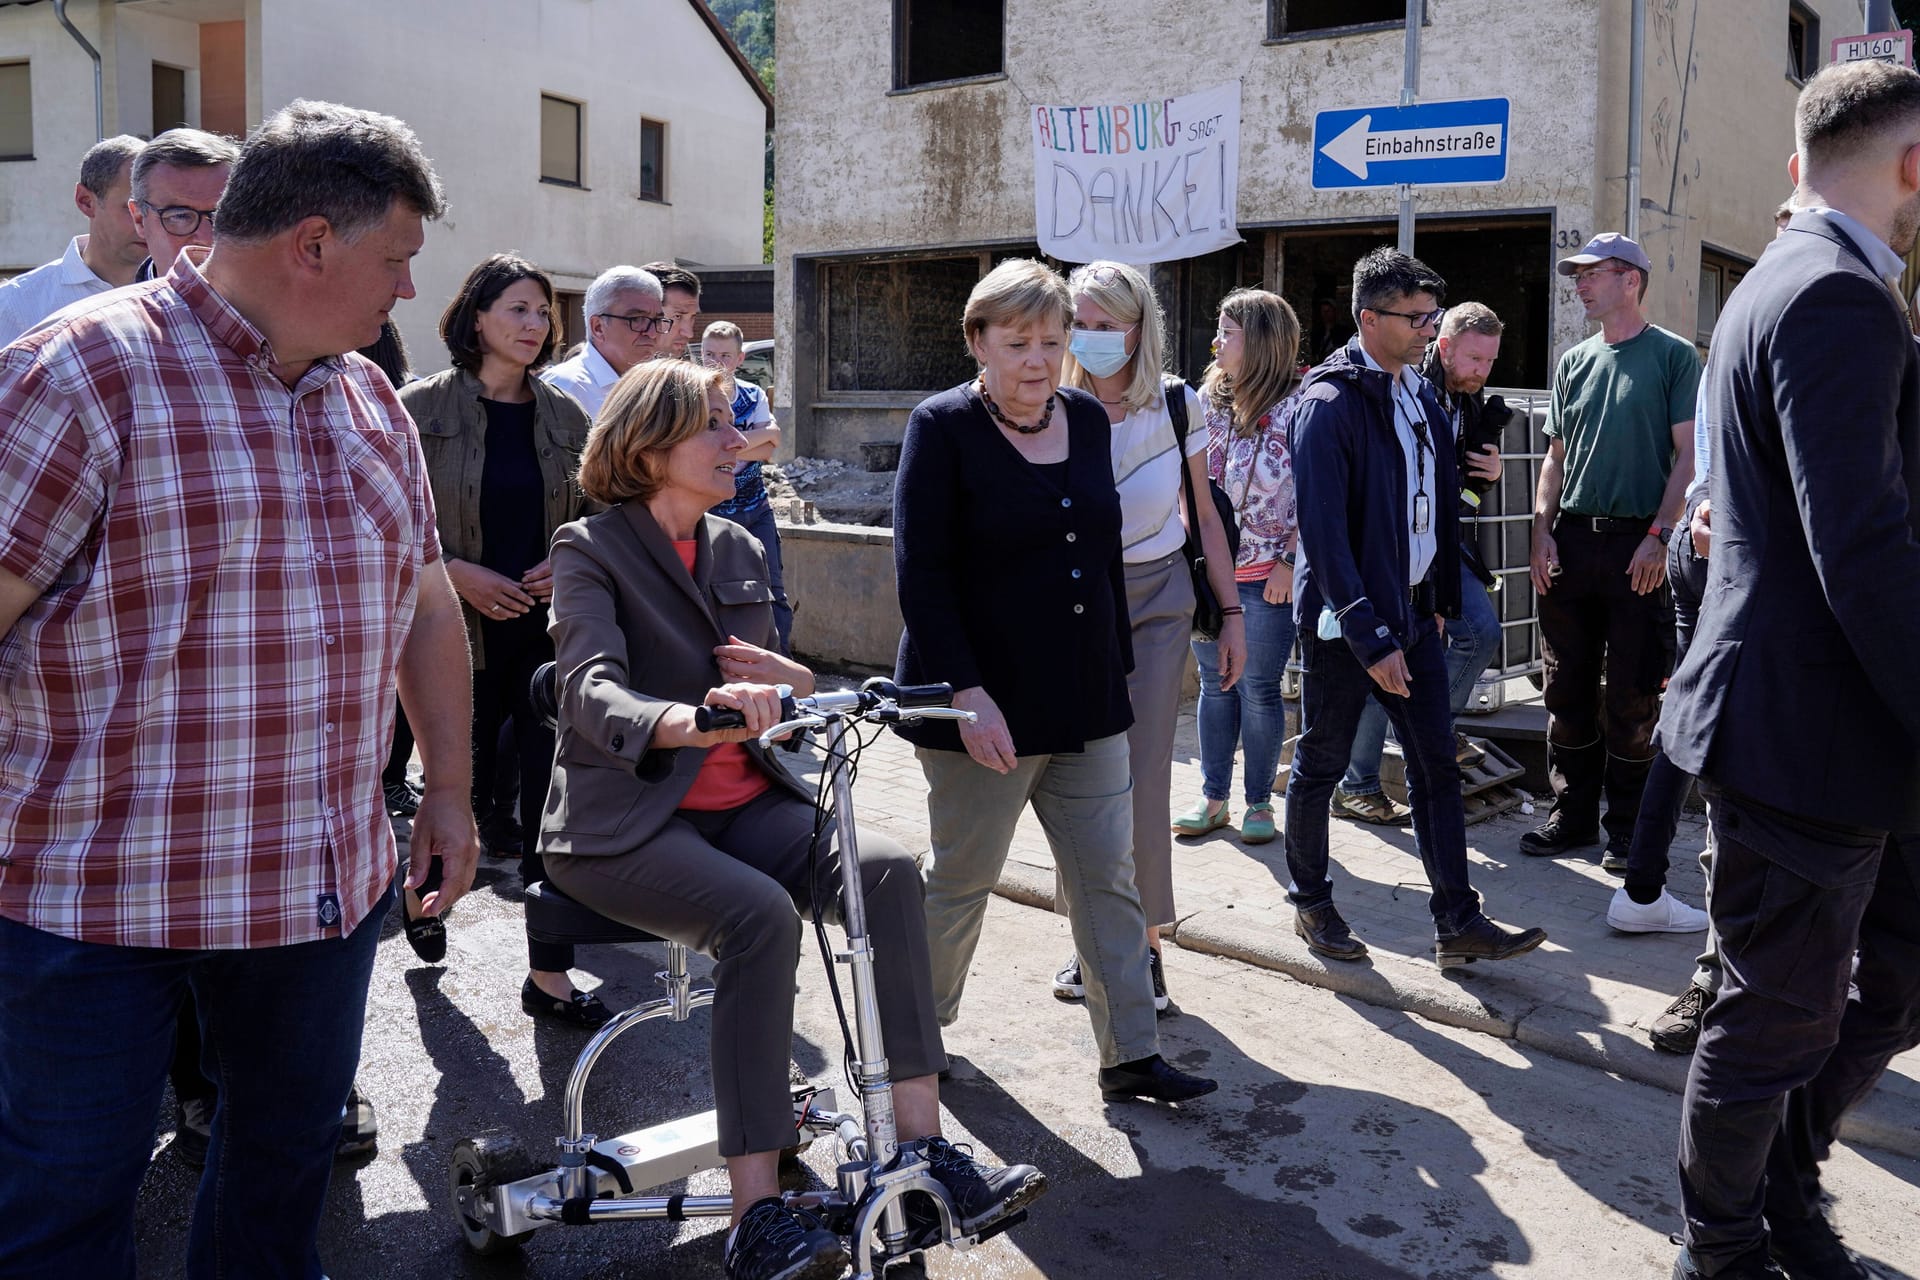 Rundgang durch Altenburg im Landkreis Ahrweiler nach dem Hochwasser im Juli 2021. Die damalige Bundeskanzlerin Angela Merkel war Anfang September 2021 gemeinsam mit der Ministerpräsidentin von Rheinland-Pfalz, Malu Dreyer, im betroffenen Ahrtal.